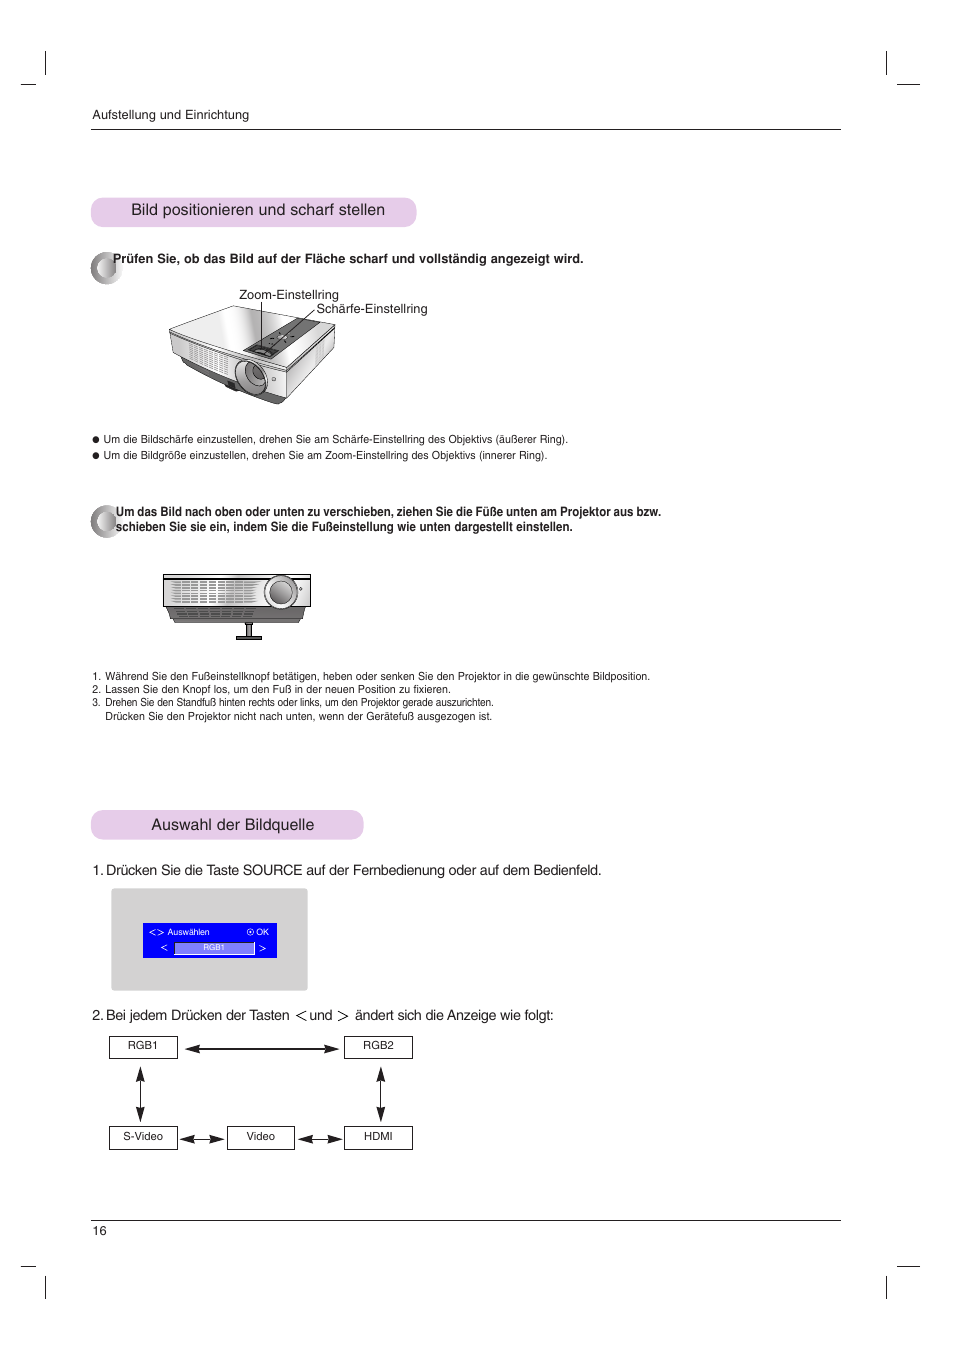 Bild positionieren und scharf stellen, Auswahl der bildquelle | LG BX501B Benutzerhandbuch | Seite 16 / 42